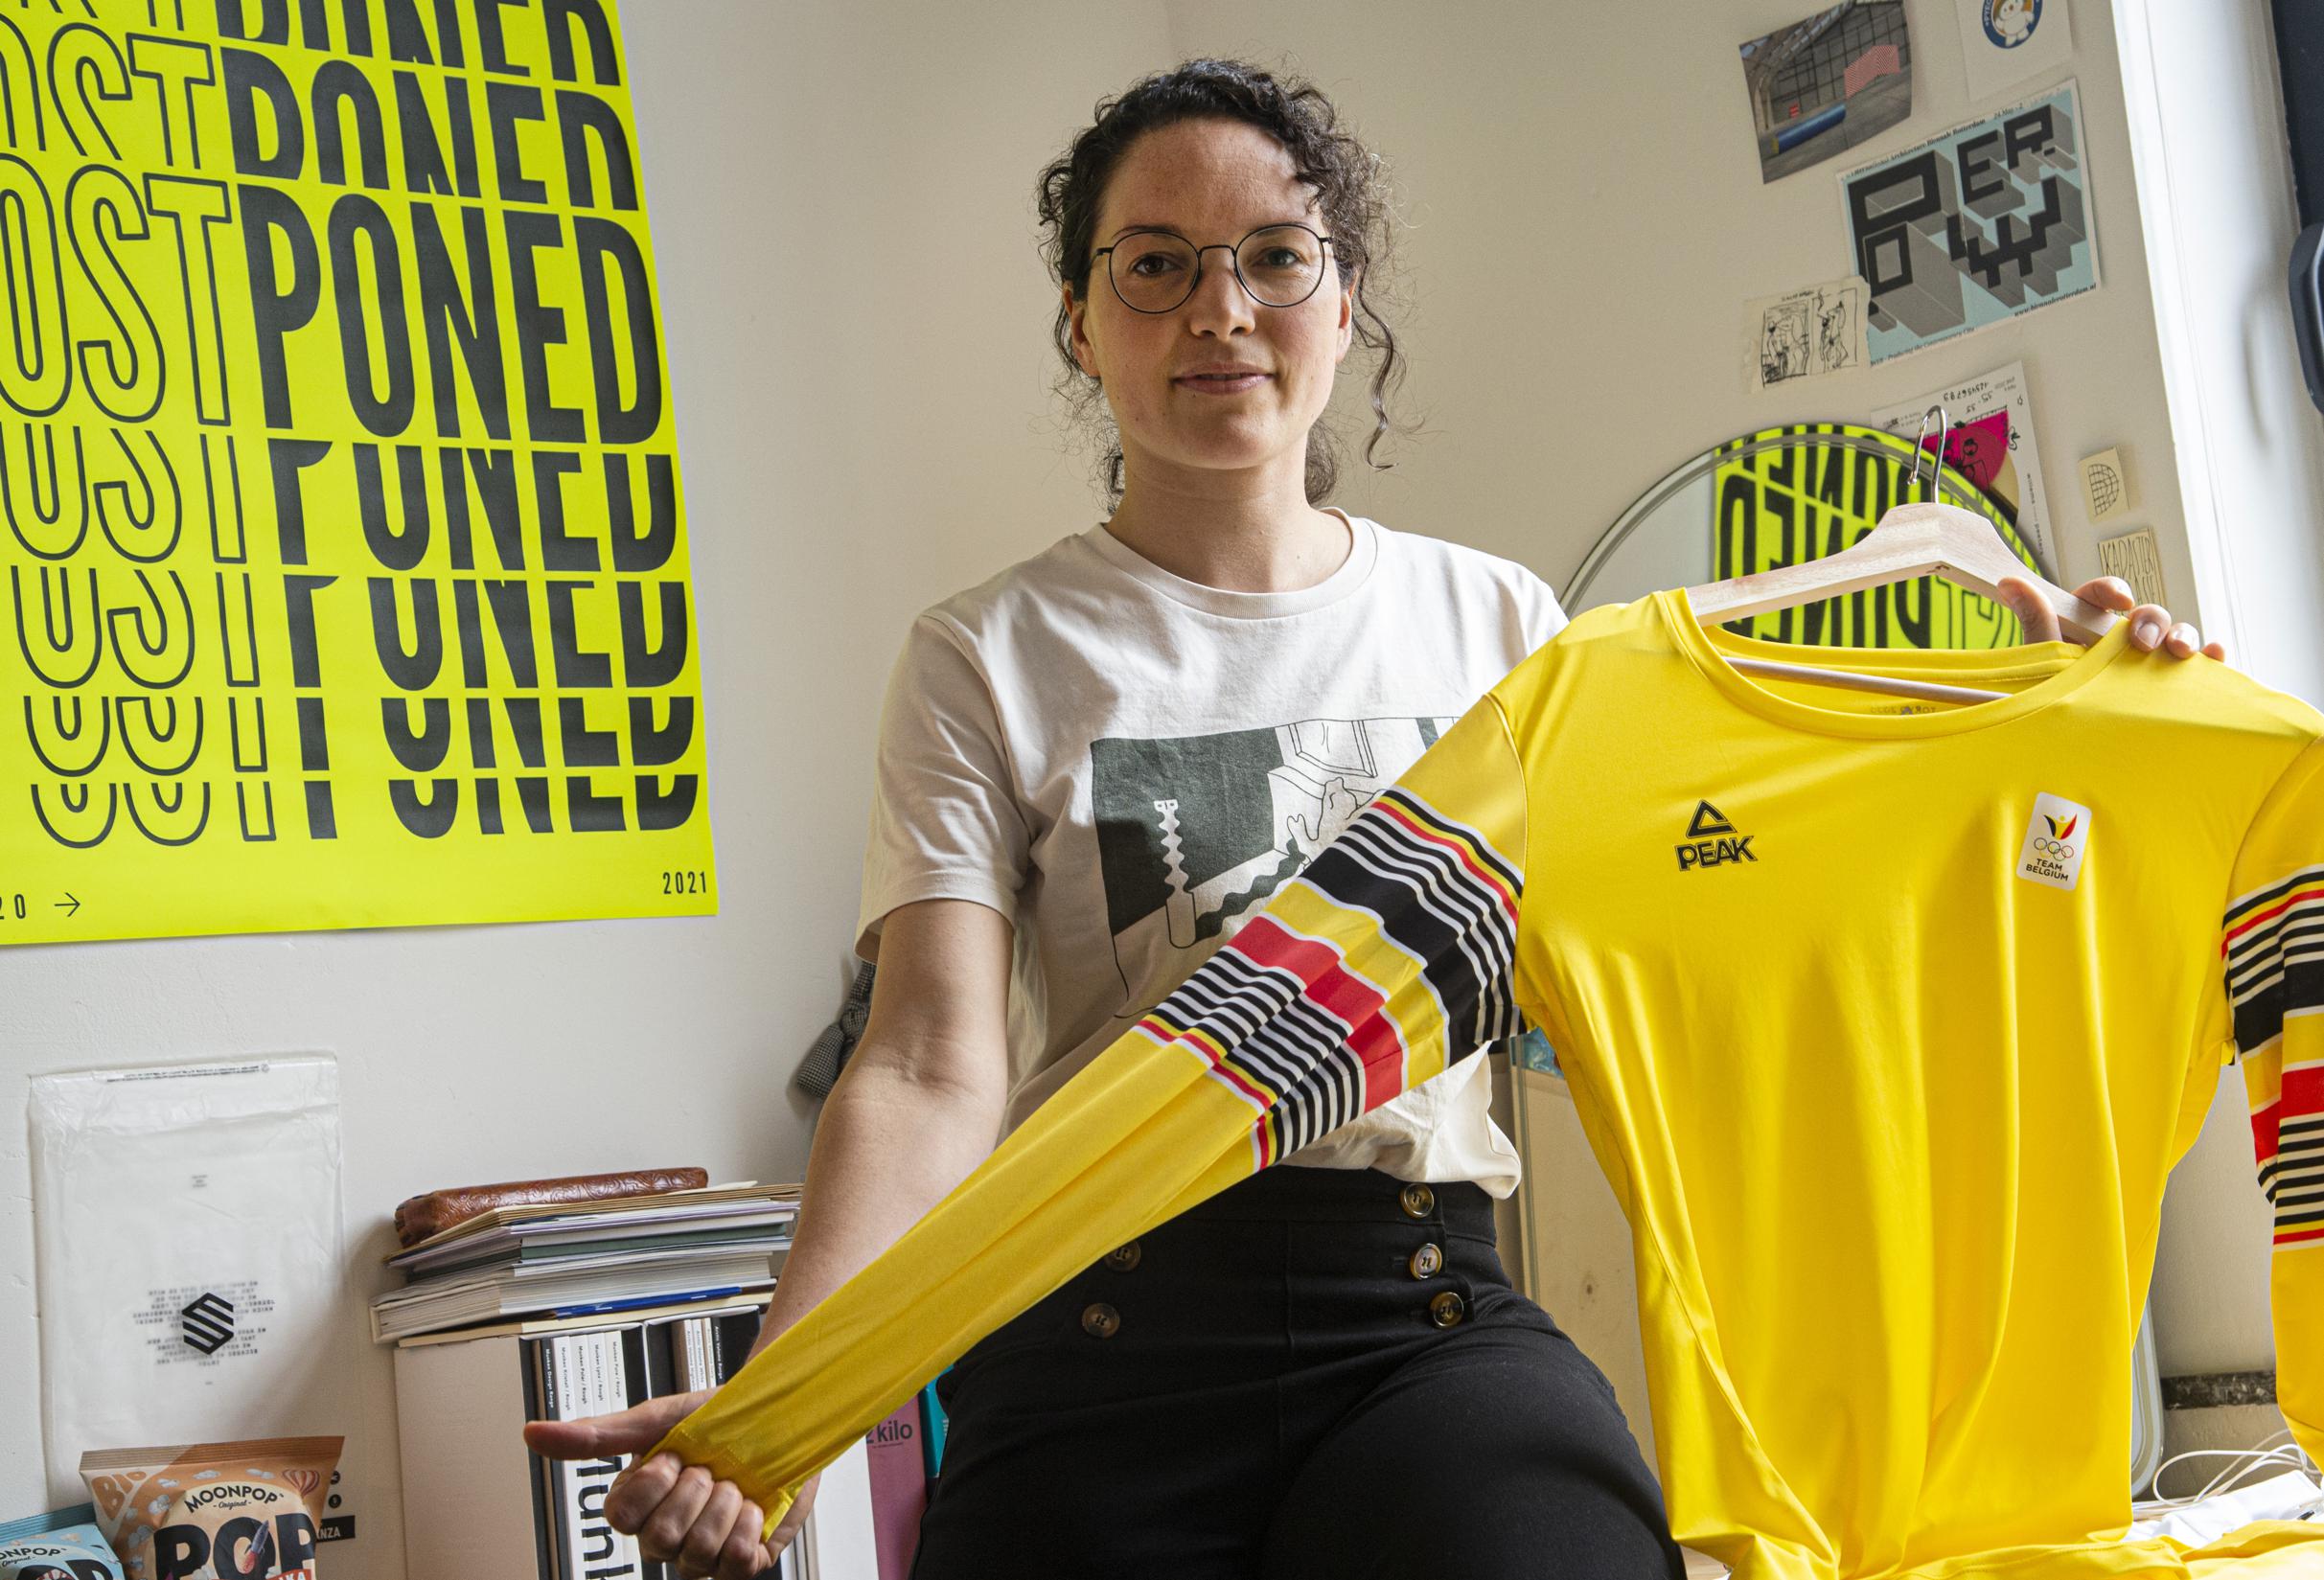 Hassy Hoe dan ook Aap Oud-olympiër uit Wuustwezel ontwerpt opvallende kleding voor Team Belgium  in Tokio: “Geel straalt positivisme uit” | Het Nieuwsblad Mobile